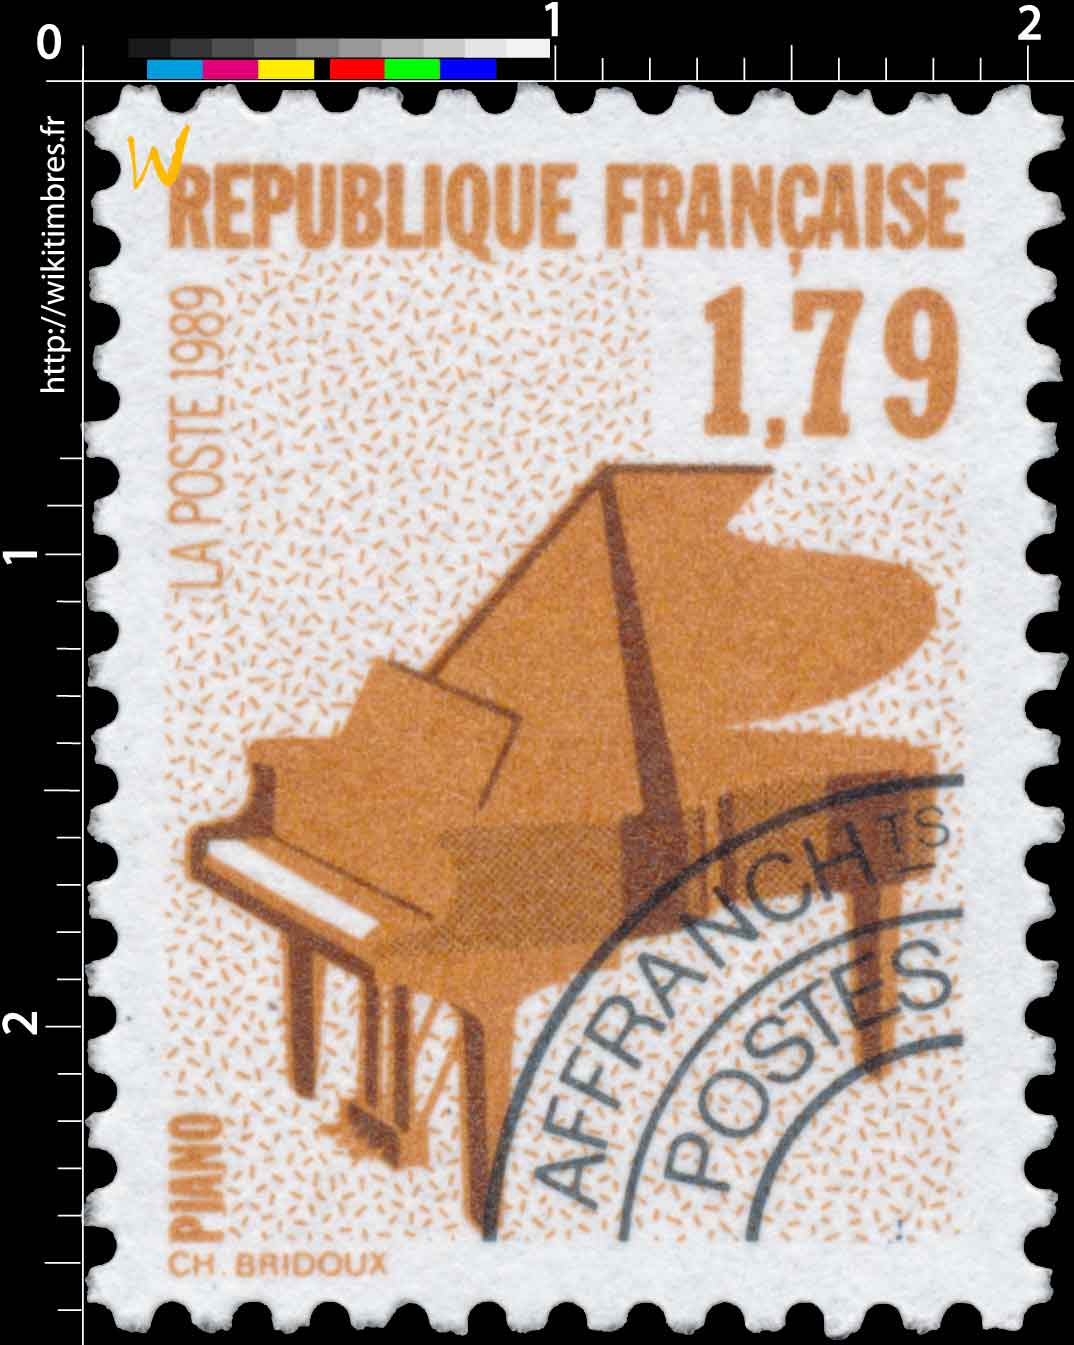 1989 PIANO